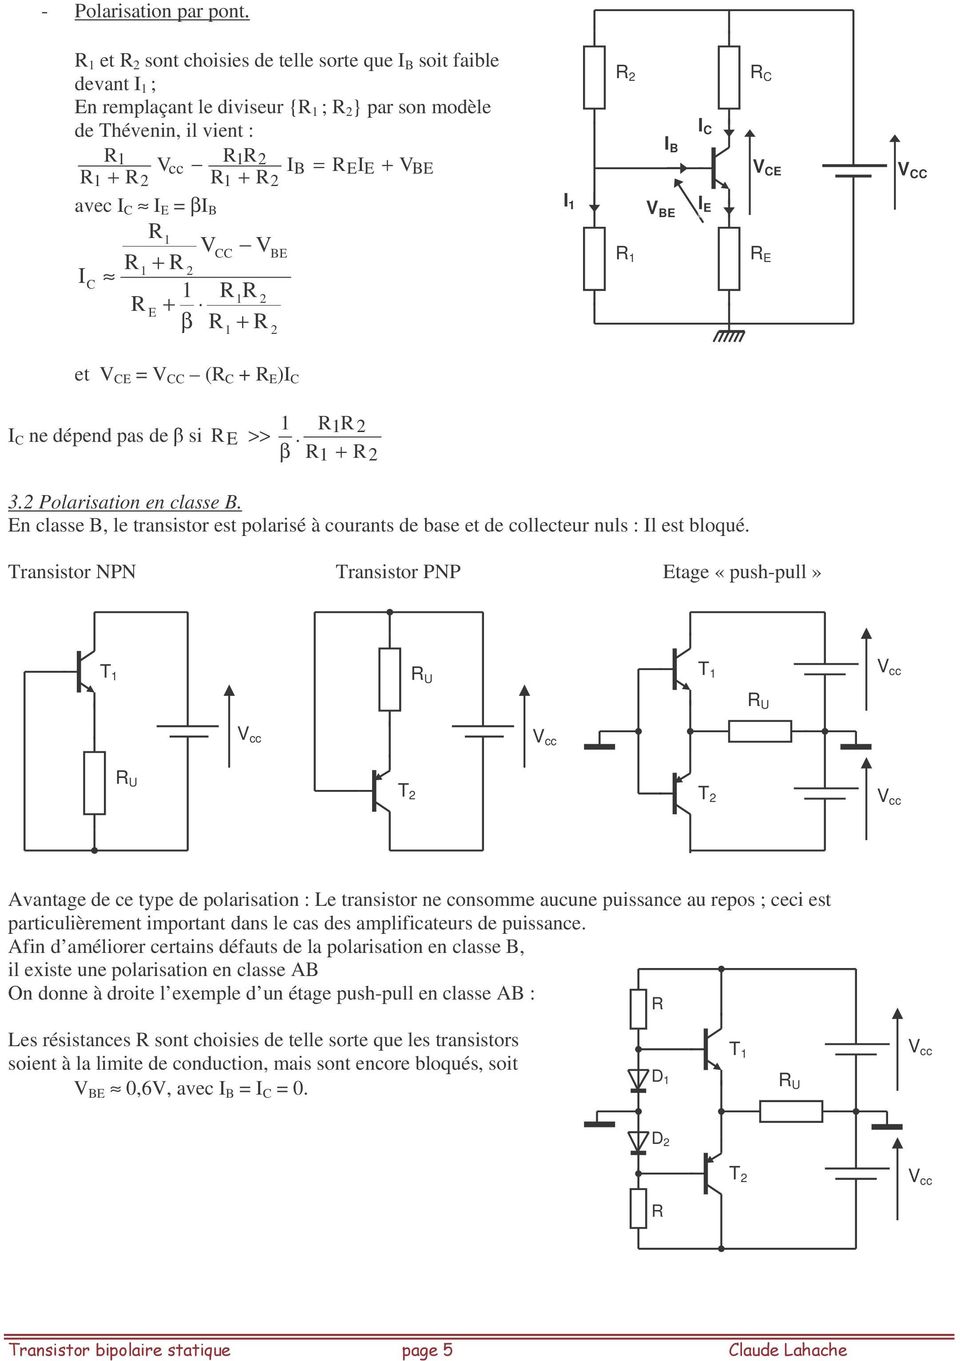 1 1 I et = ( + ) ne dépend pas de si >> 1 1. 1 + 3. Polarisation en classe B. n classe B, le transistor est polarisé à courants de base et de collecteur nuls : Il est bloqué.